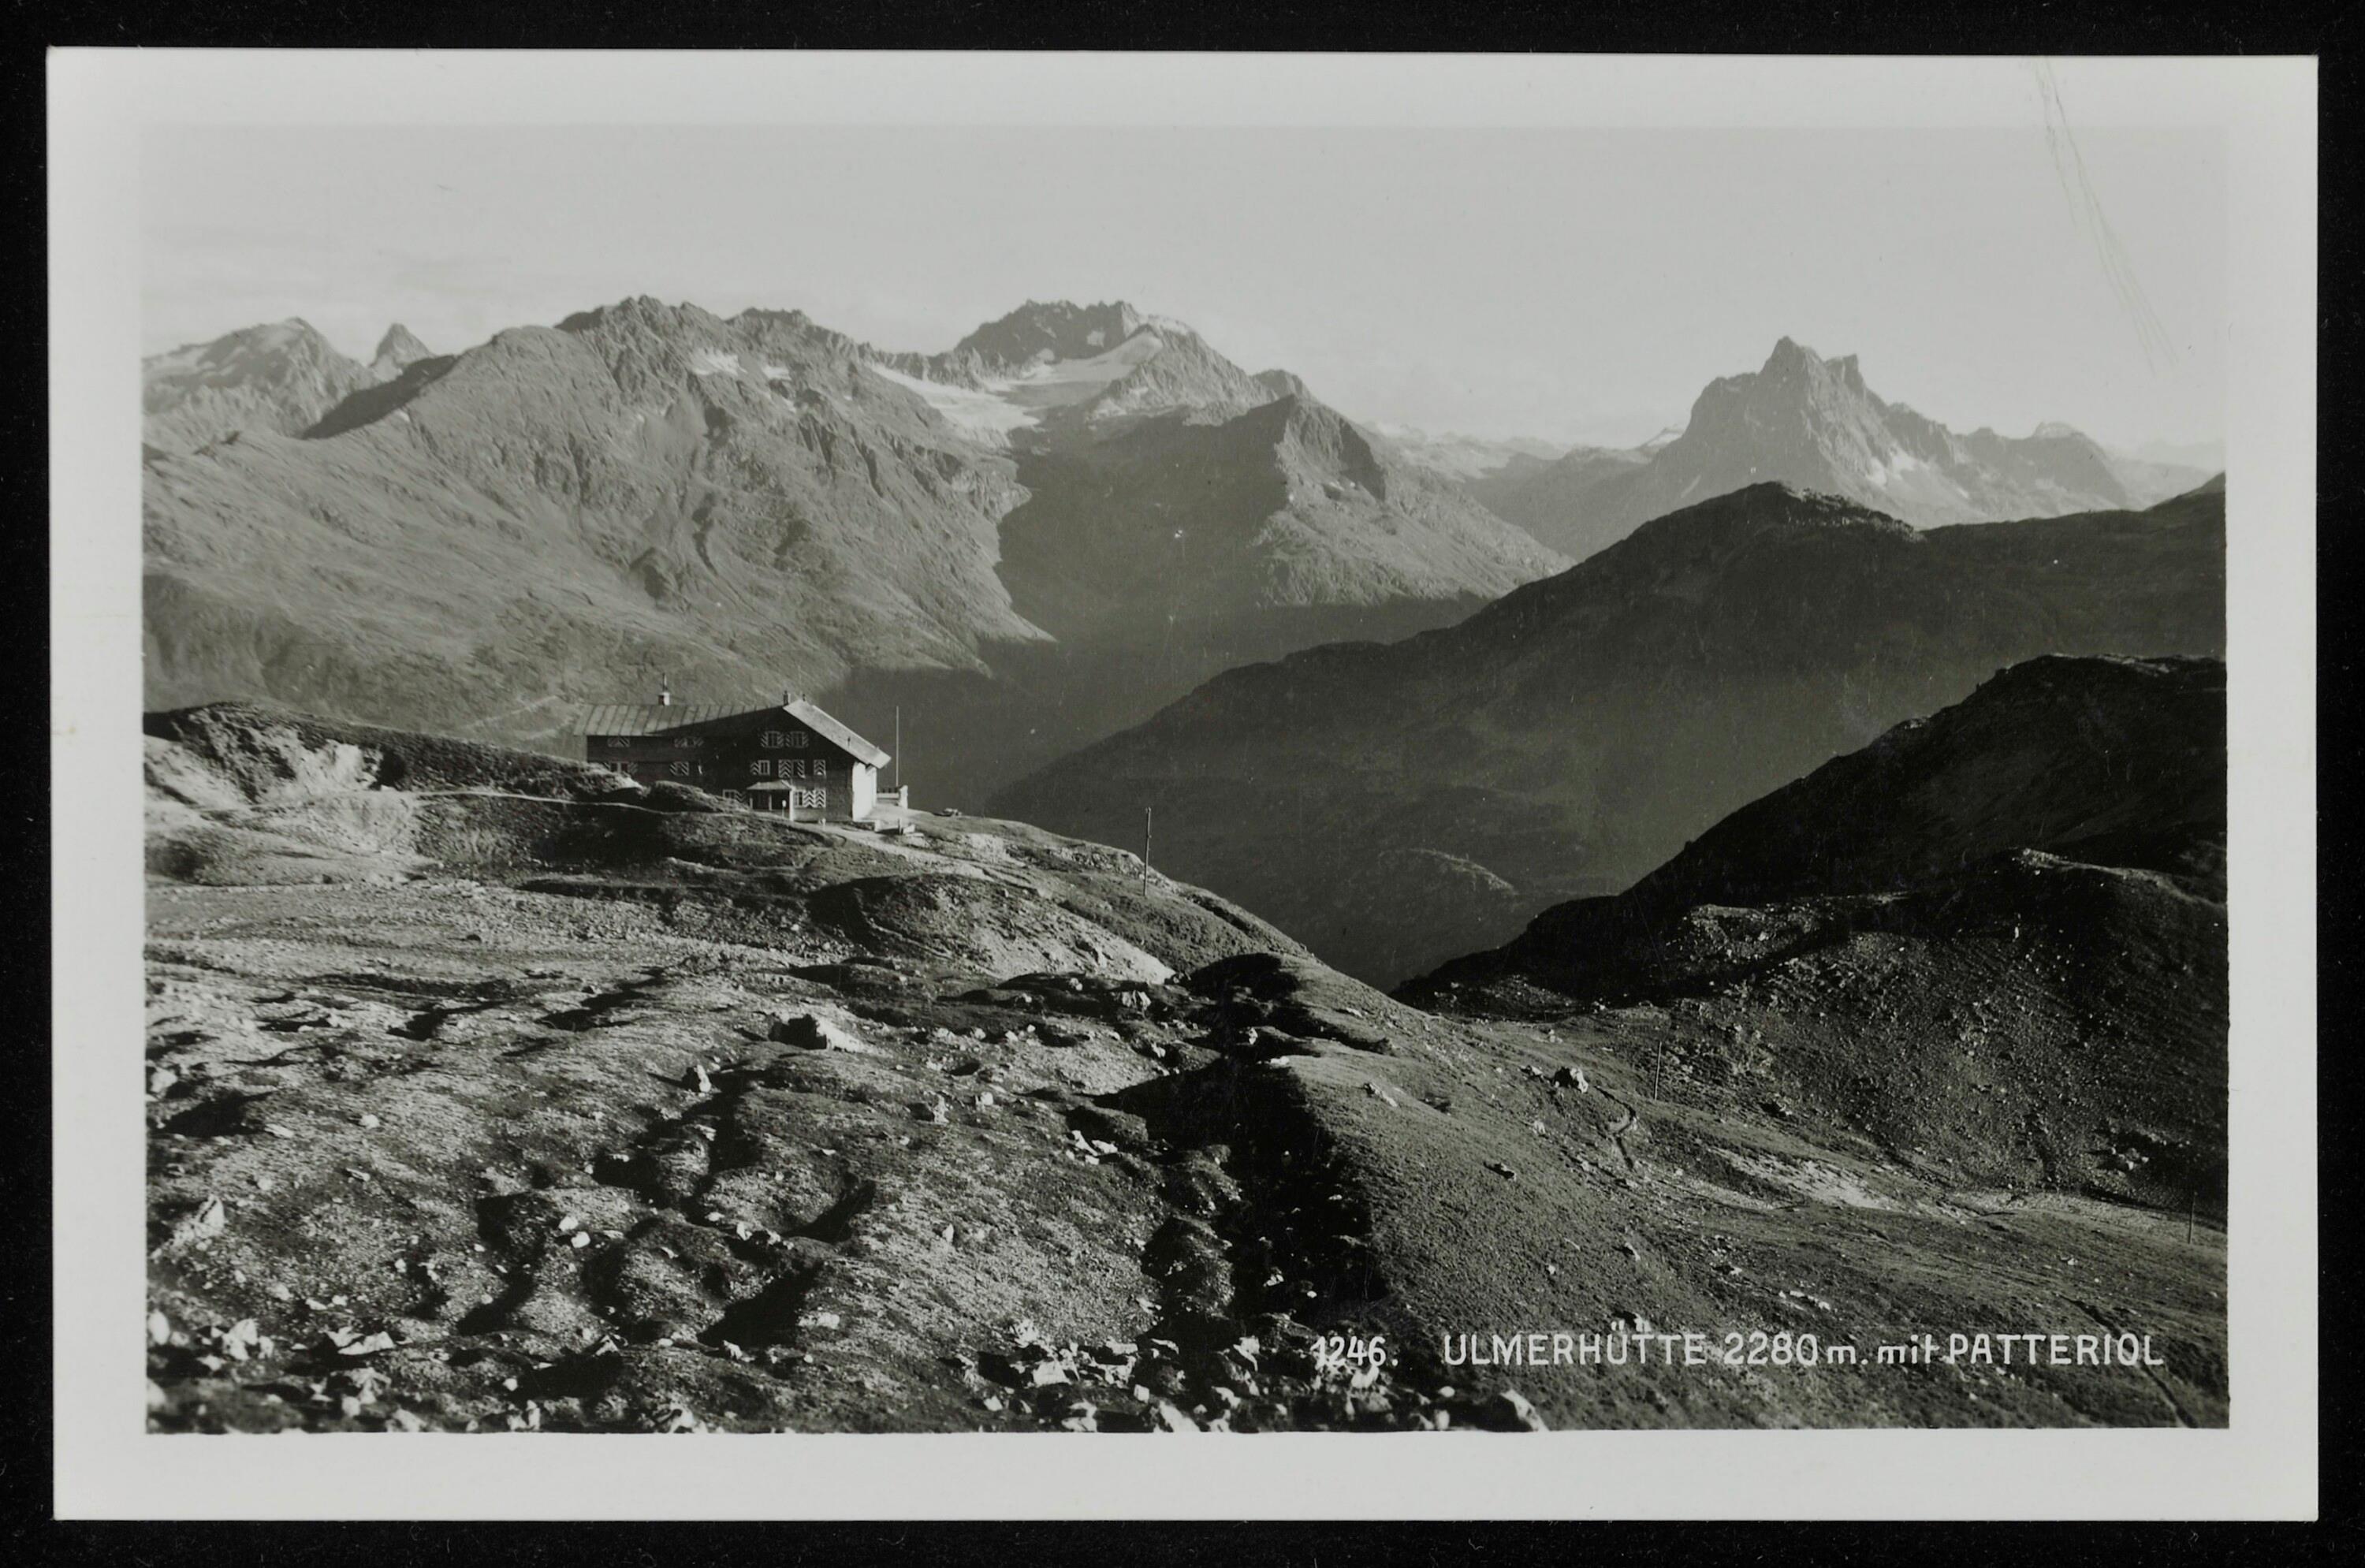 [Klösterle] Ulmerhütte 2280 m. mit Patteriol></div>


    <hr>
    <div class=